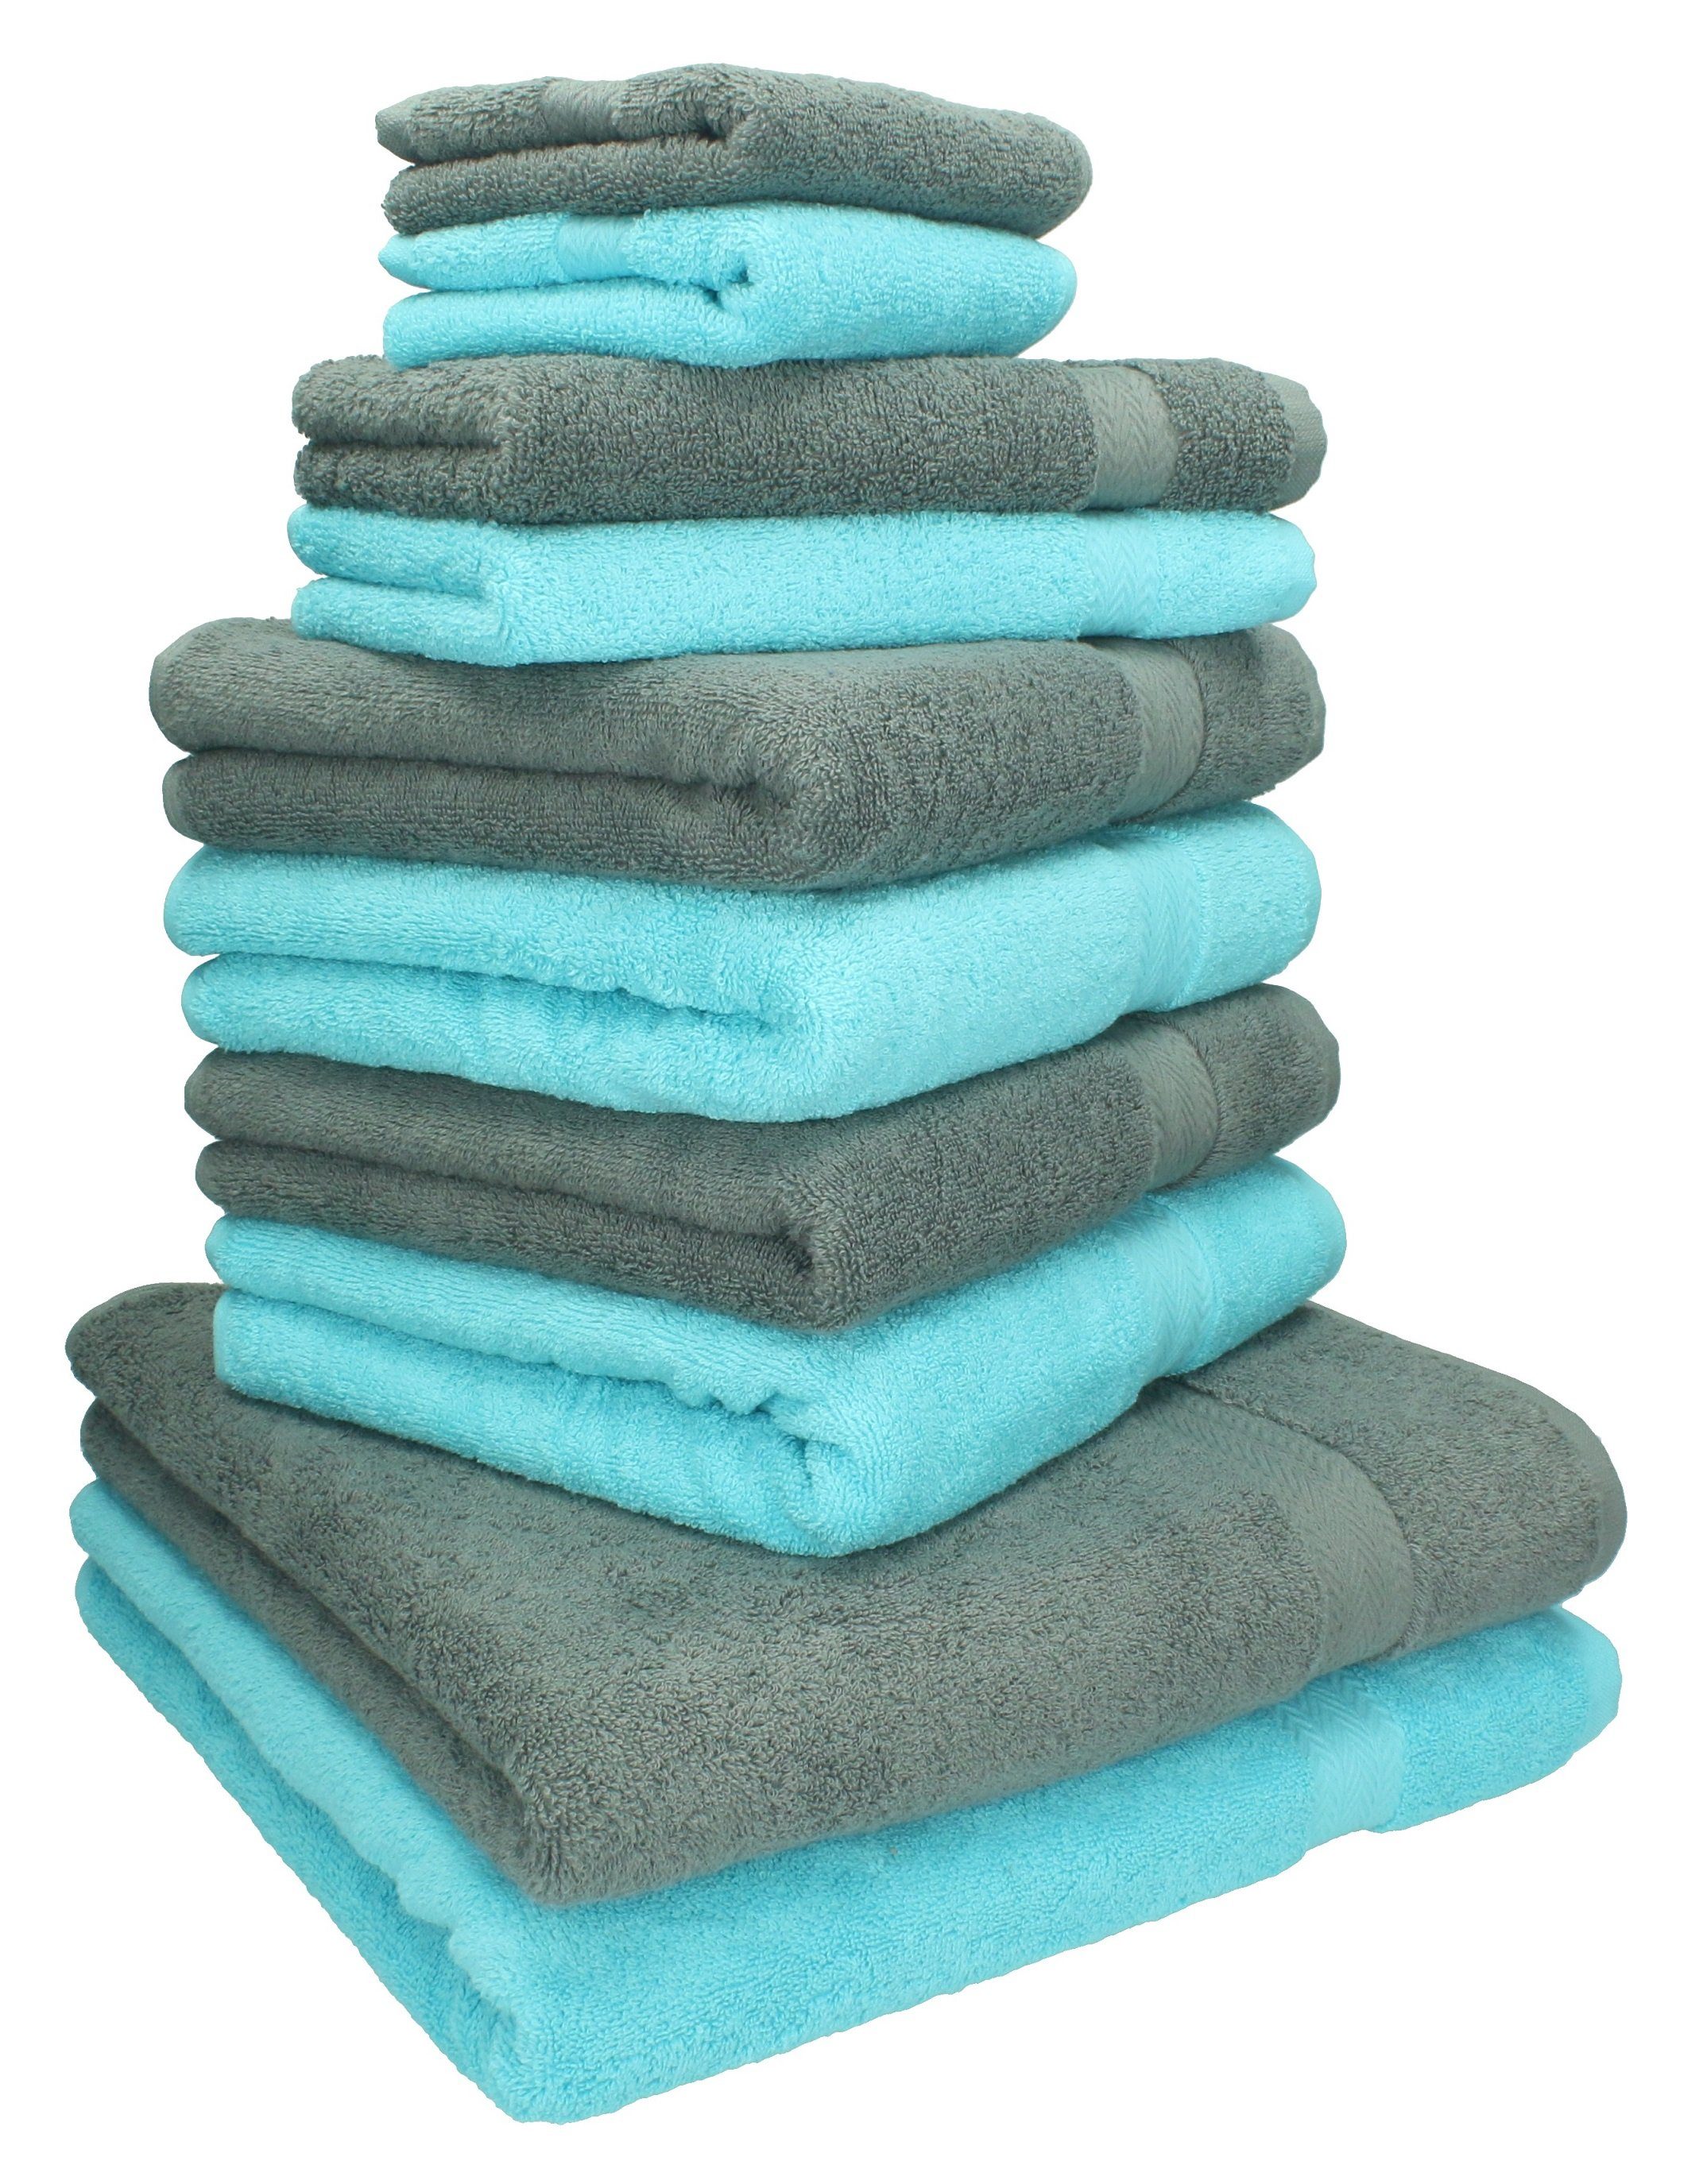 Betz Handtuch Set 10-TLG. grau, anthrazit Baumwolle und Farbe Classic Handtuch-Set türkis 100